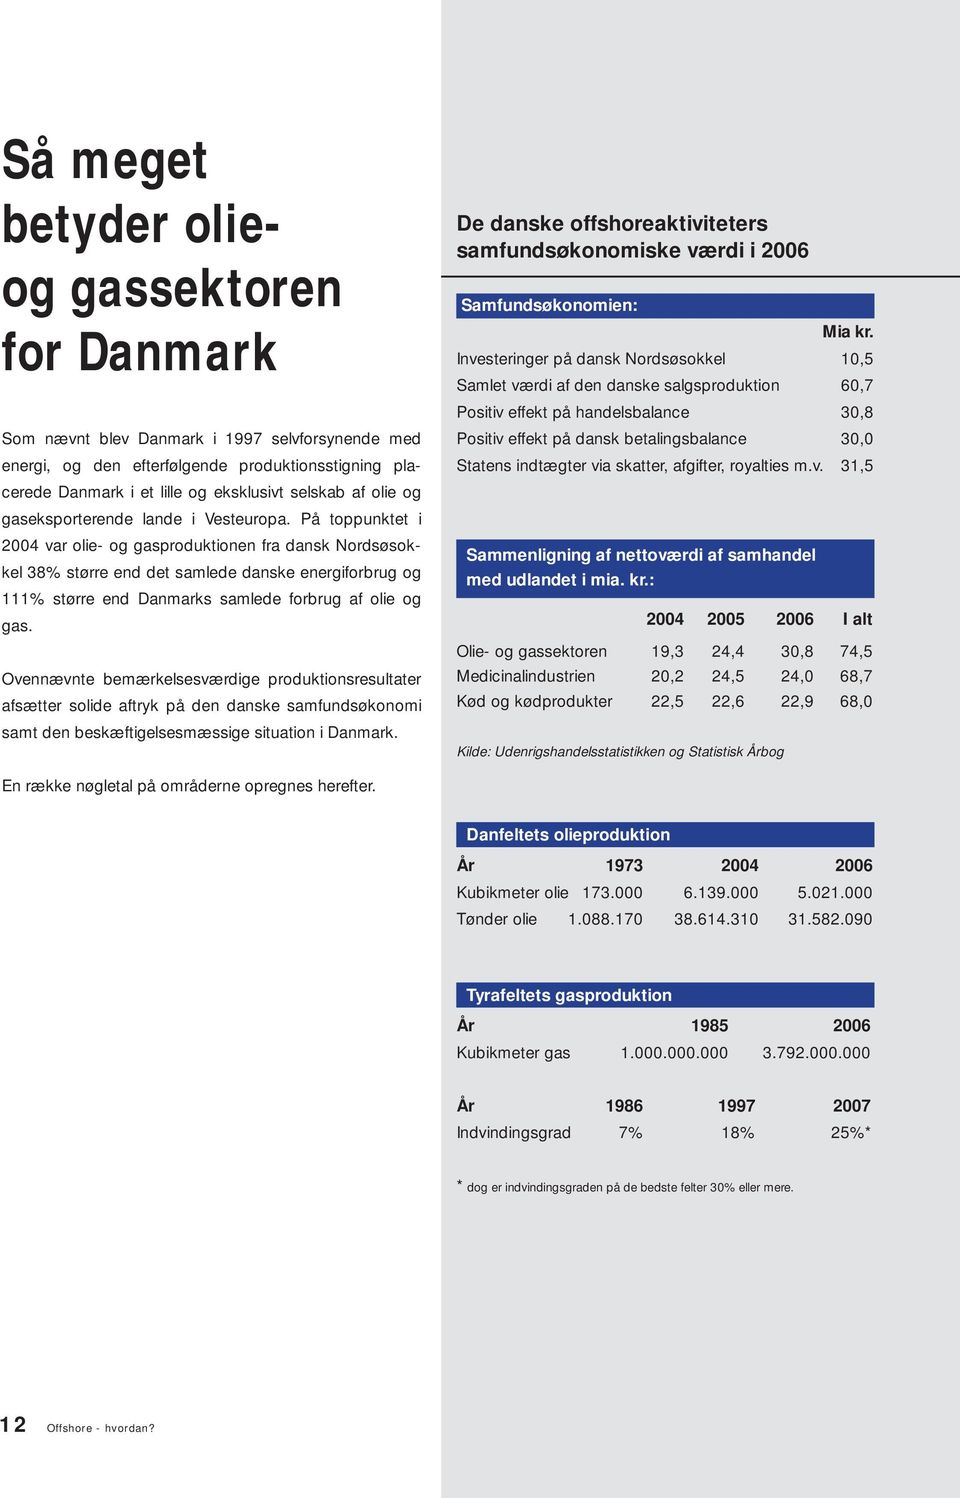 På toppunktet i 2004 var olie- og gasproduktionen fra dansk Nordsøsokkel 38% større end det samlede danske energiforbrug og 111% større end Danmarks samlede forbrug af olie og gas.